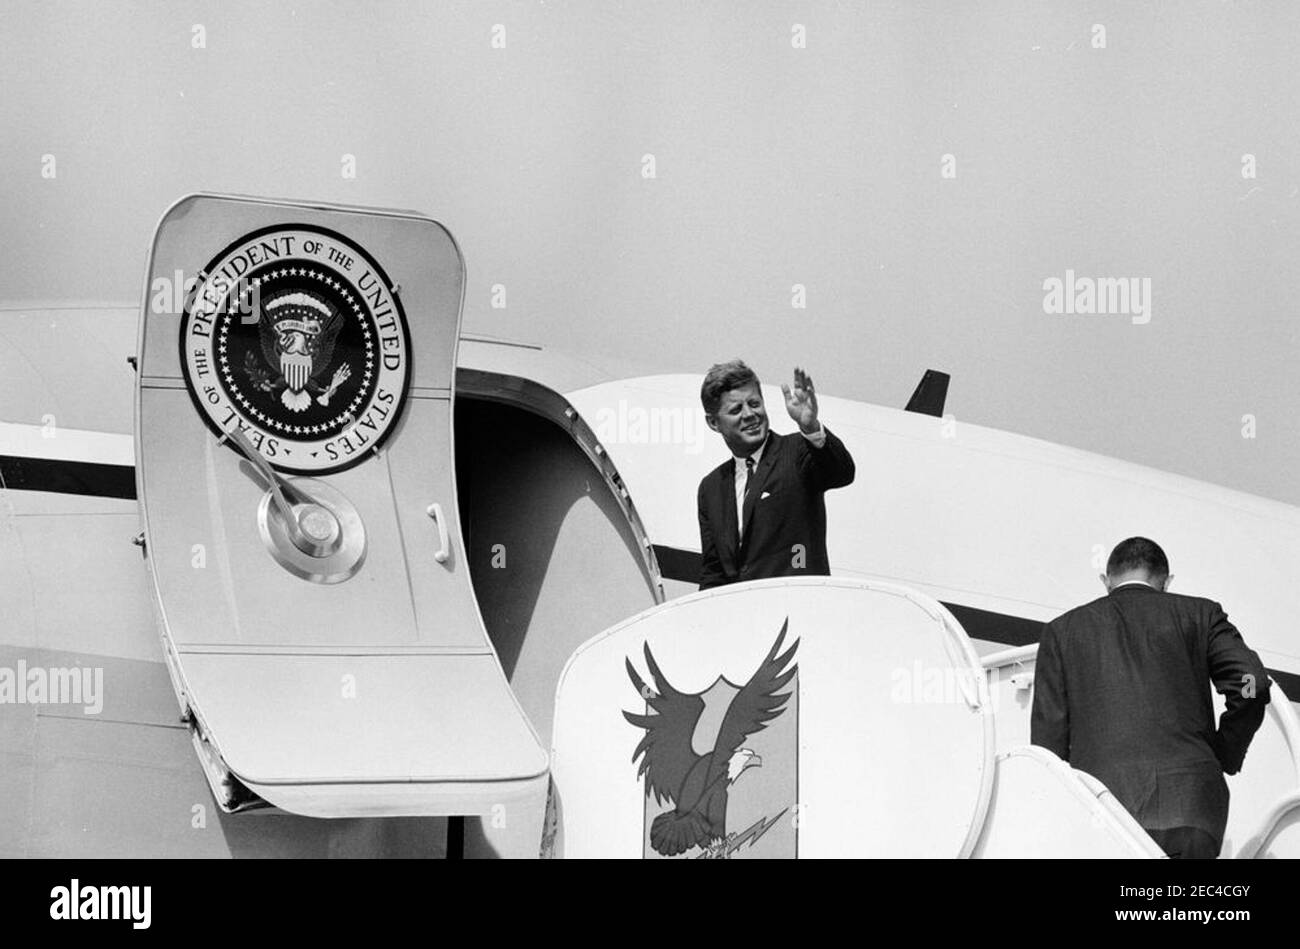 Reise nach Western States: Pueblo, Colorado, 12:50pm Uhr. Präsident John F. Kennedy winkt von der Treppe der Air Force One, bei seiner Abreise vom Pueblo Memorial Airport in Pueblo, Colorado; Innenminister Stewart L. Udall (zurück zur Kamera) folgt dahinter. Stockfoto